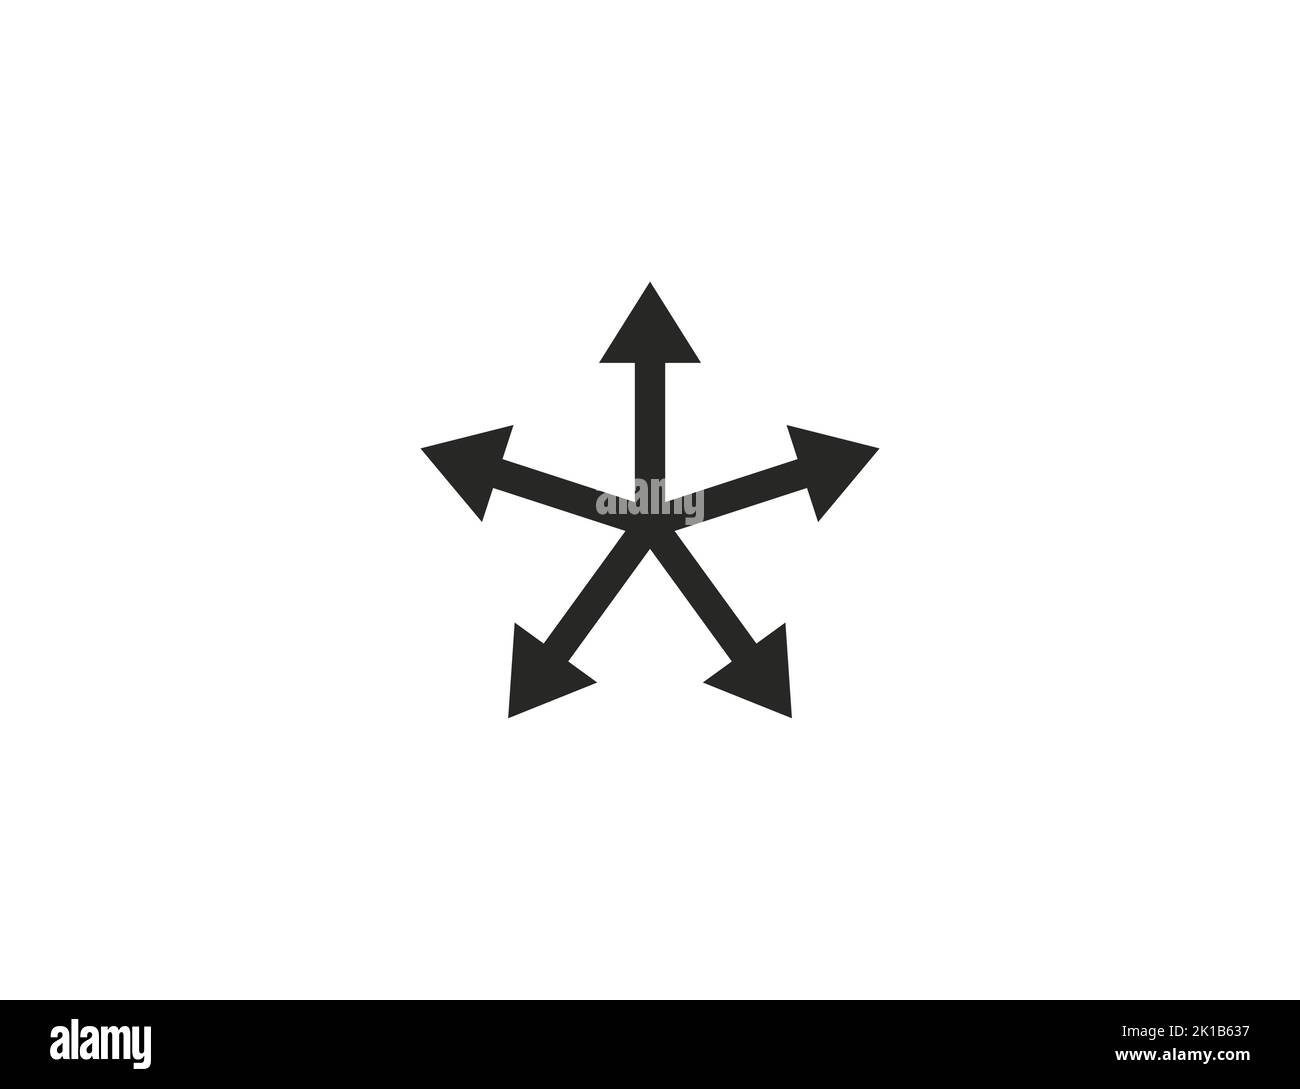 Many ways arrow icon. Vector illustration. Stock Vector